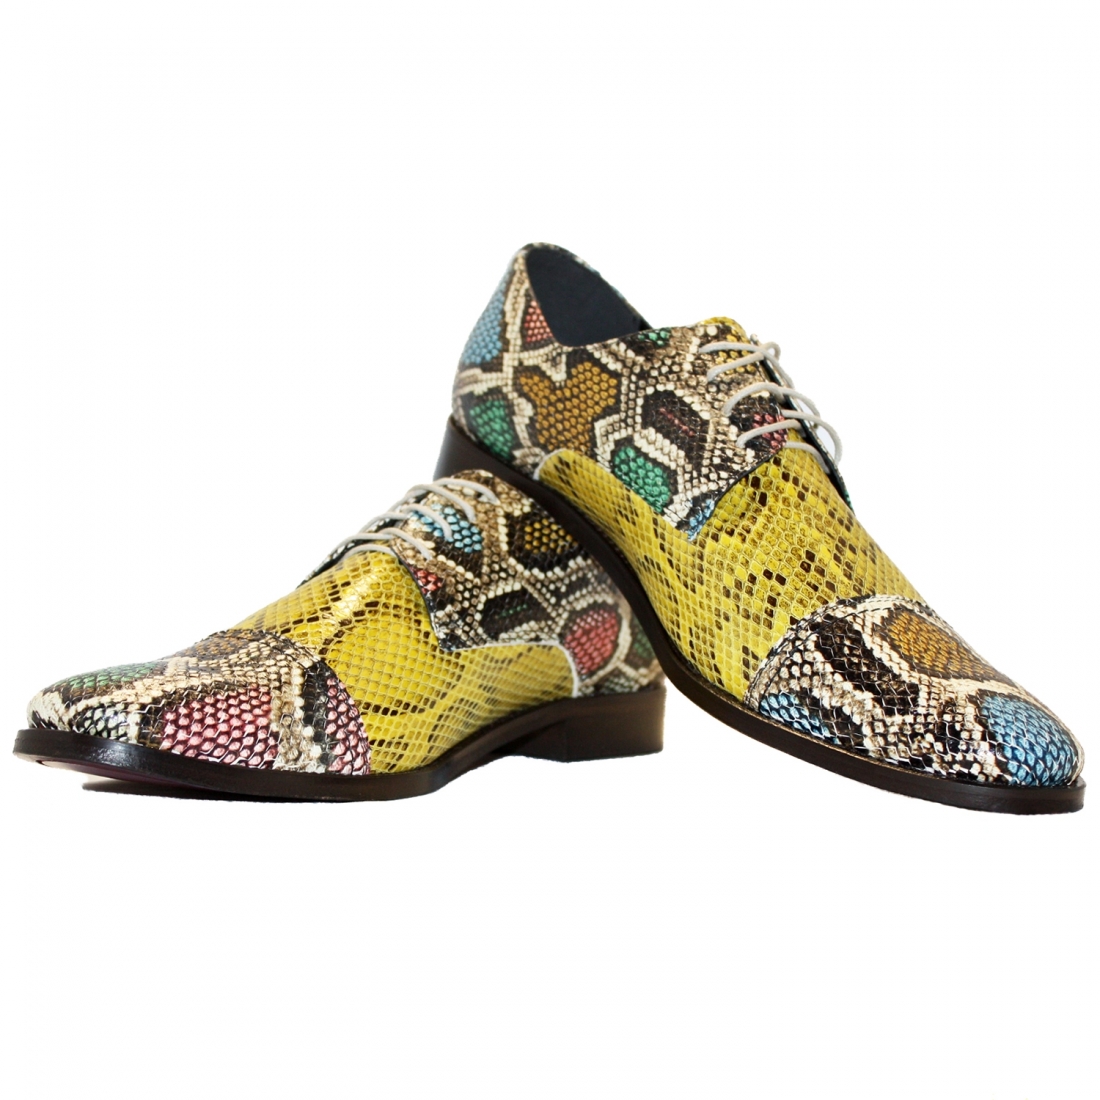 copy of Modello Arosso - Scarpe Classiche - Handmade Colorful Italian Leather Shoes